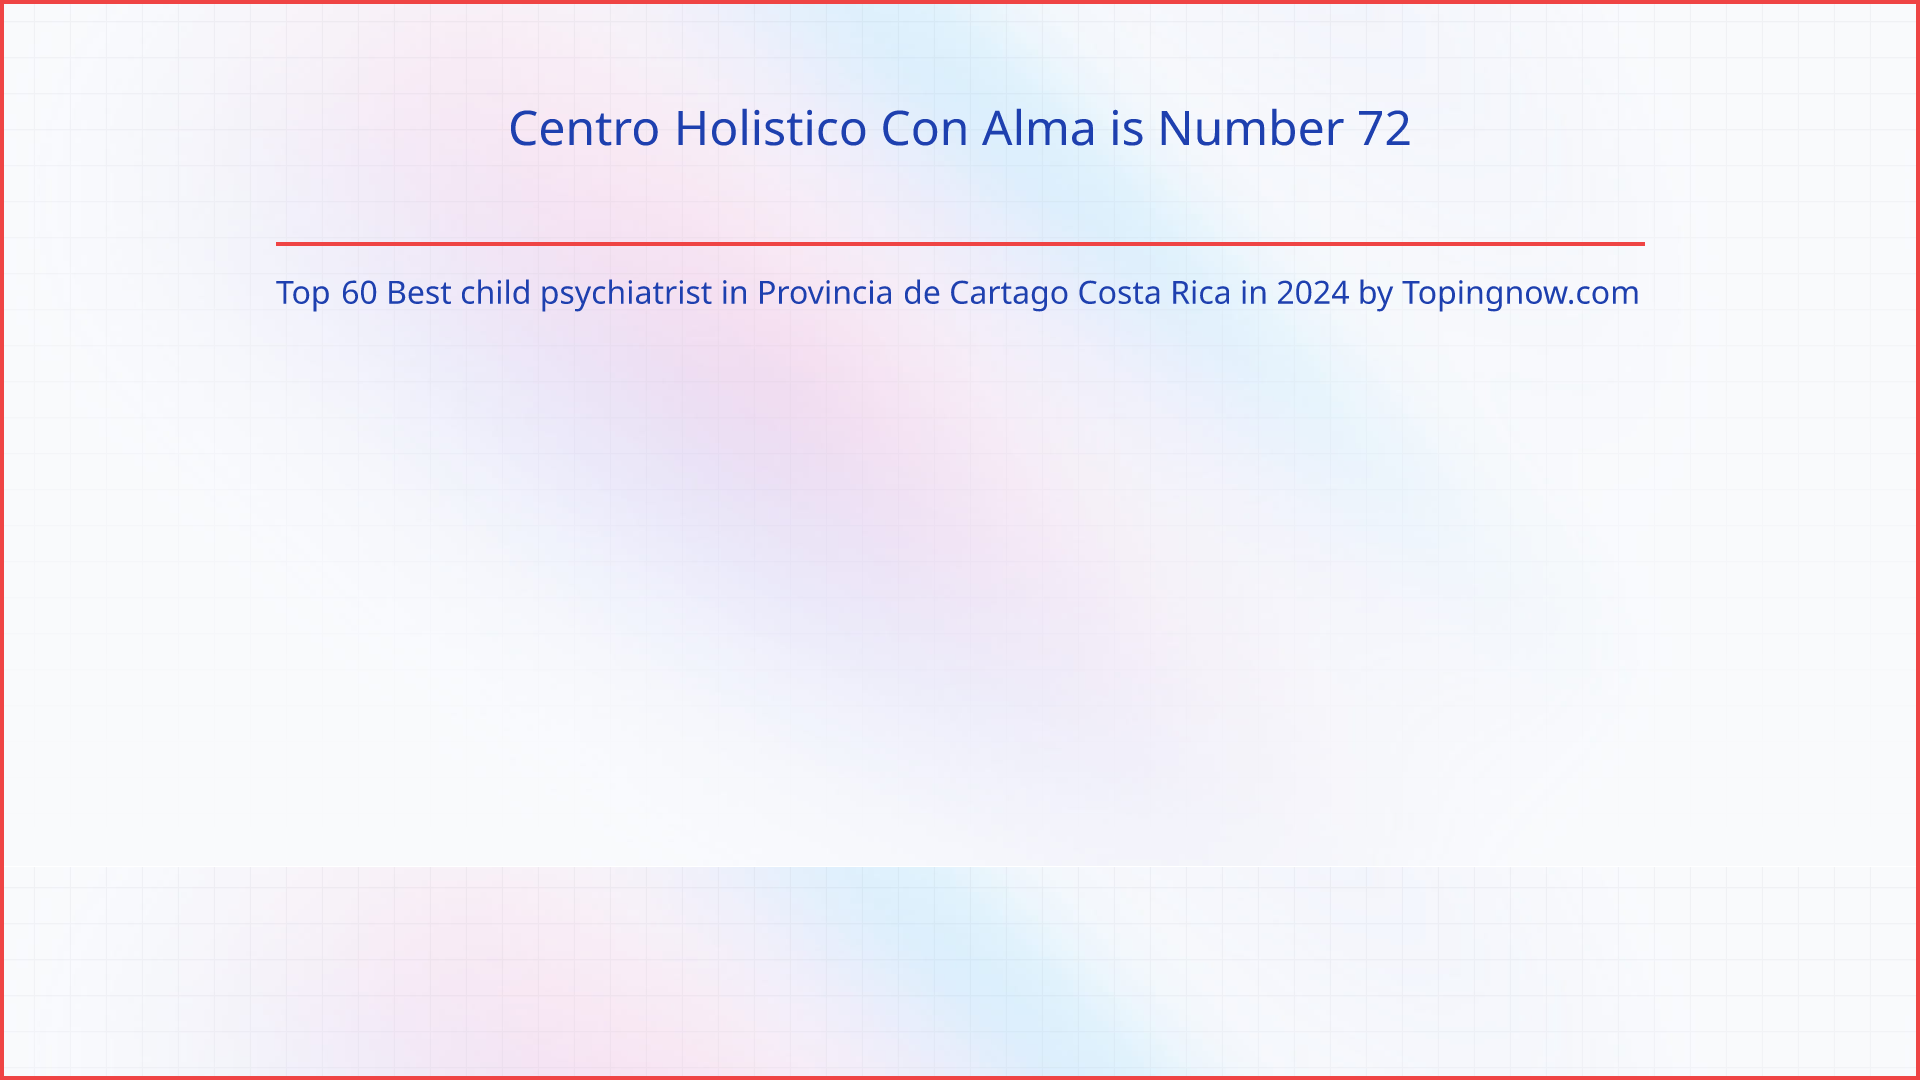 Centro Holistico Con Alma: Top 60 Best child psychiatrist in Provincia de Cartago Costa Rica in 2024